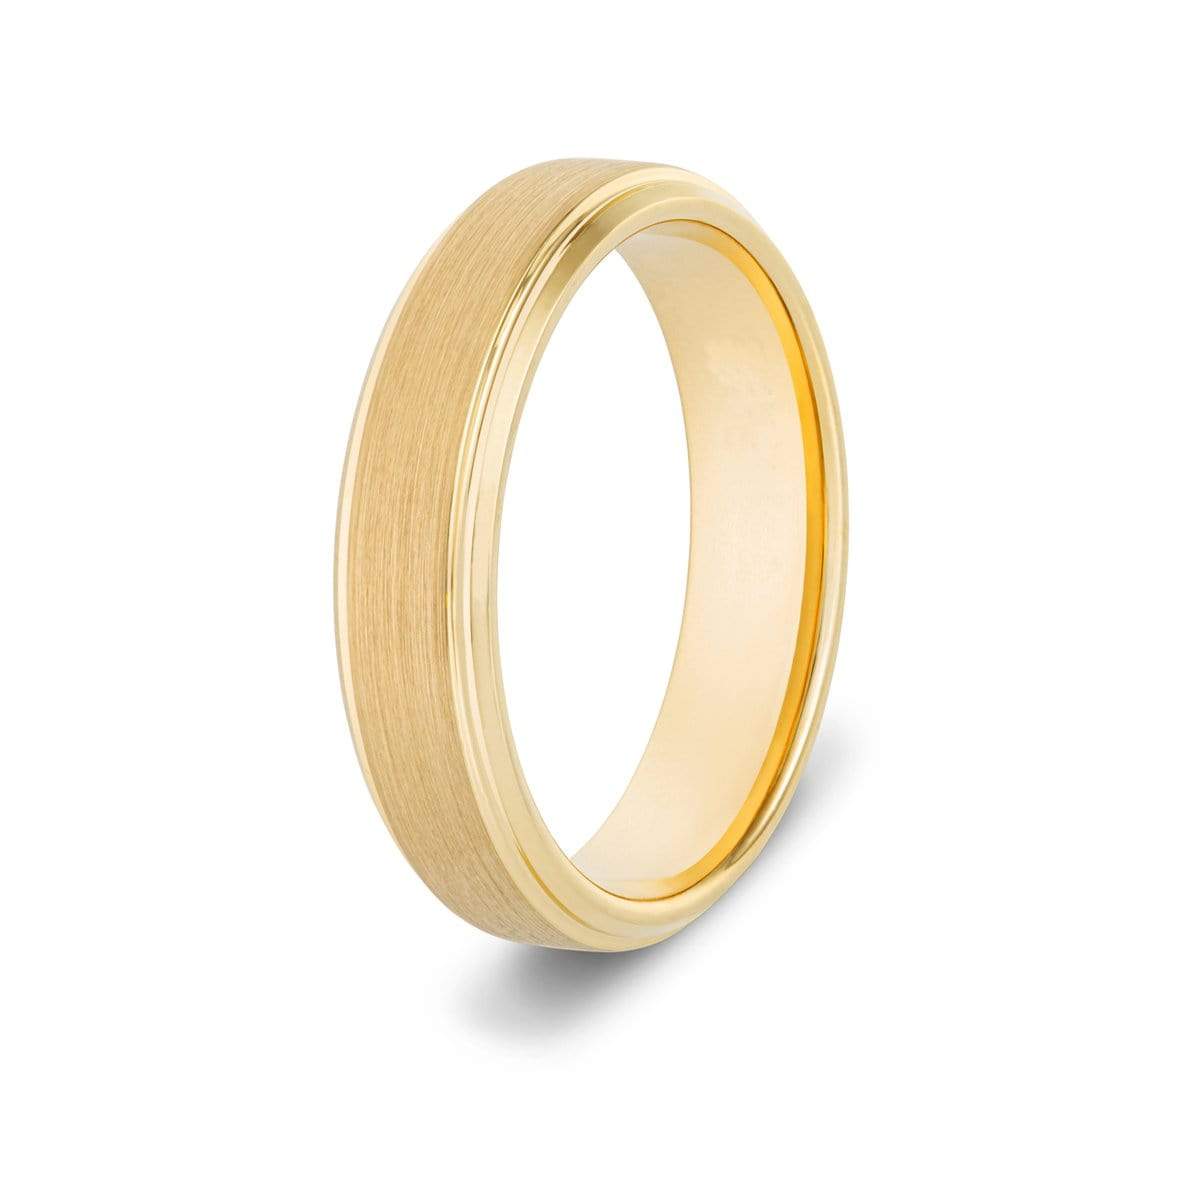 Brushed Gold Tungsten Ring Set